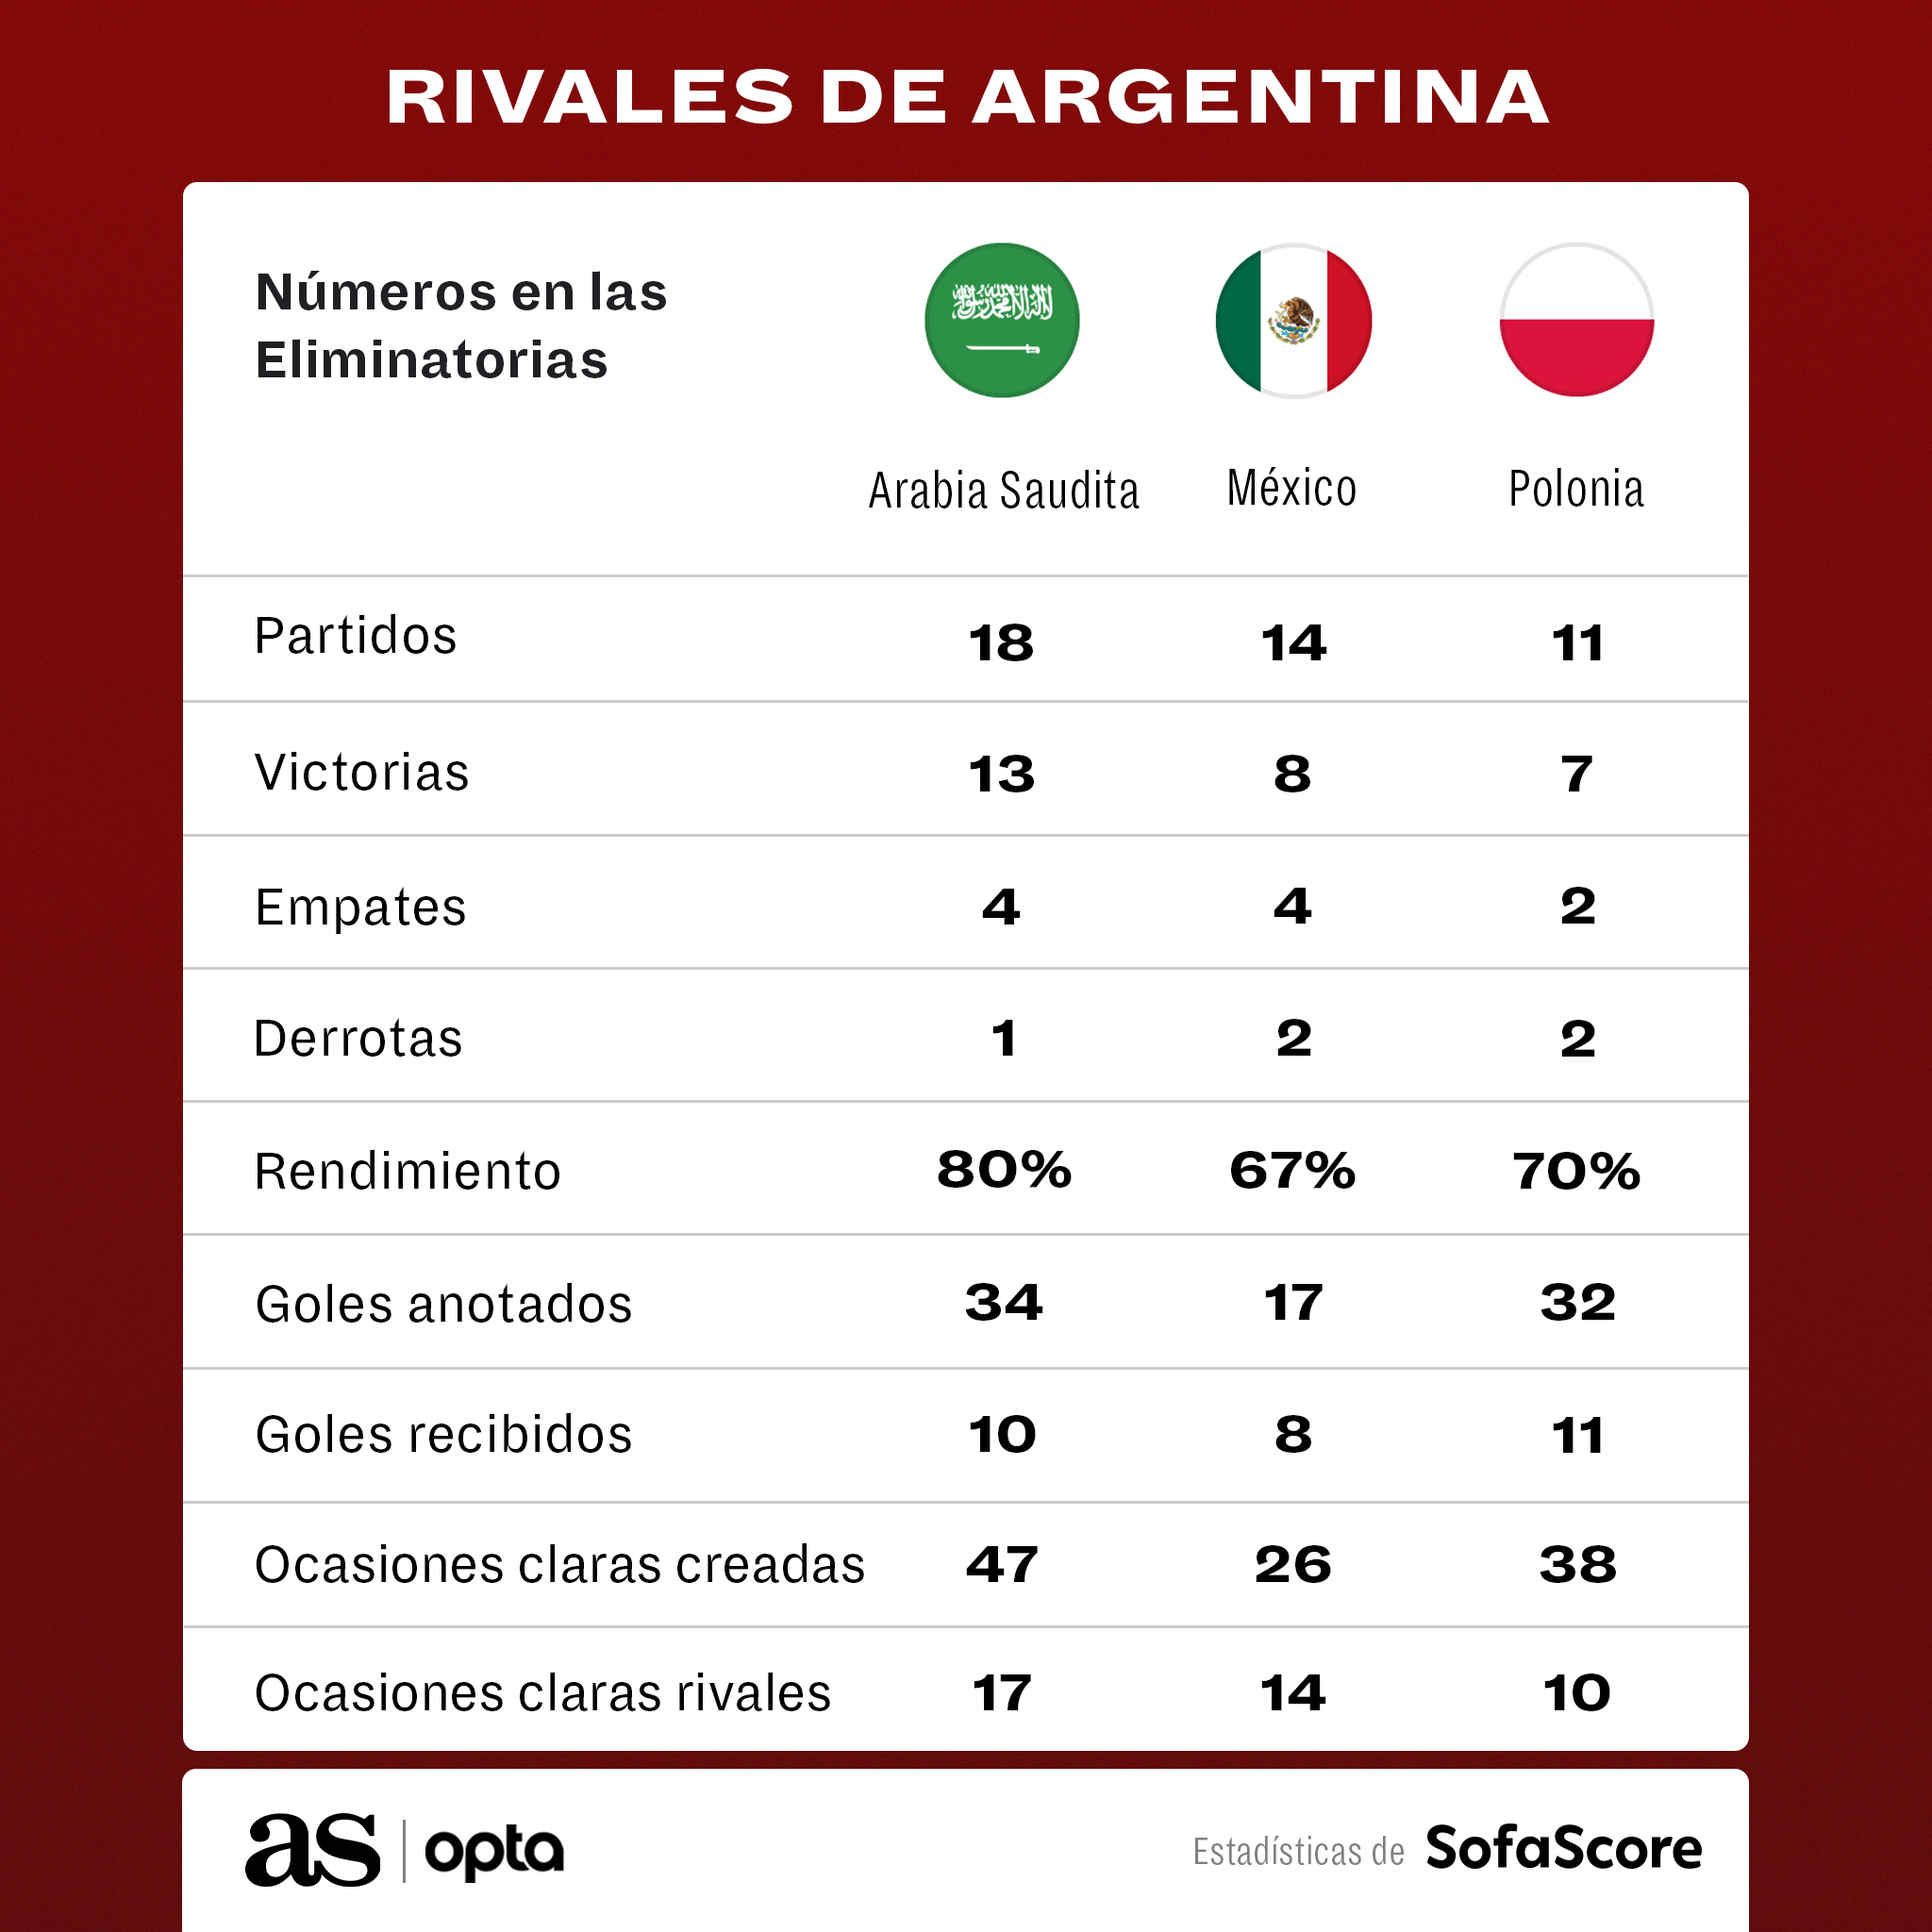 ¿Cuáles son los rivales de Argentina